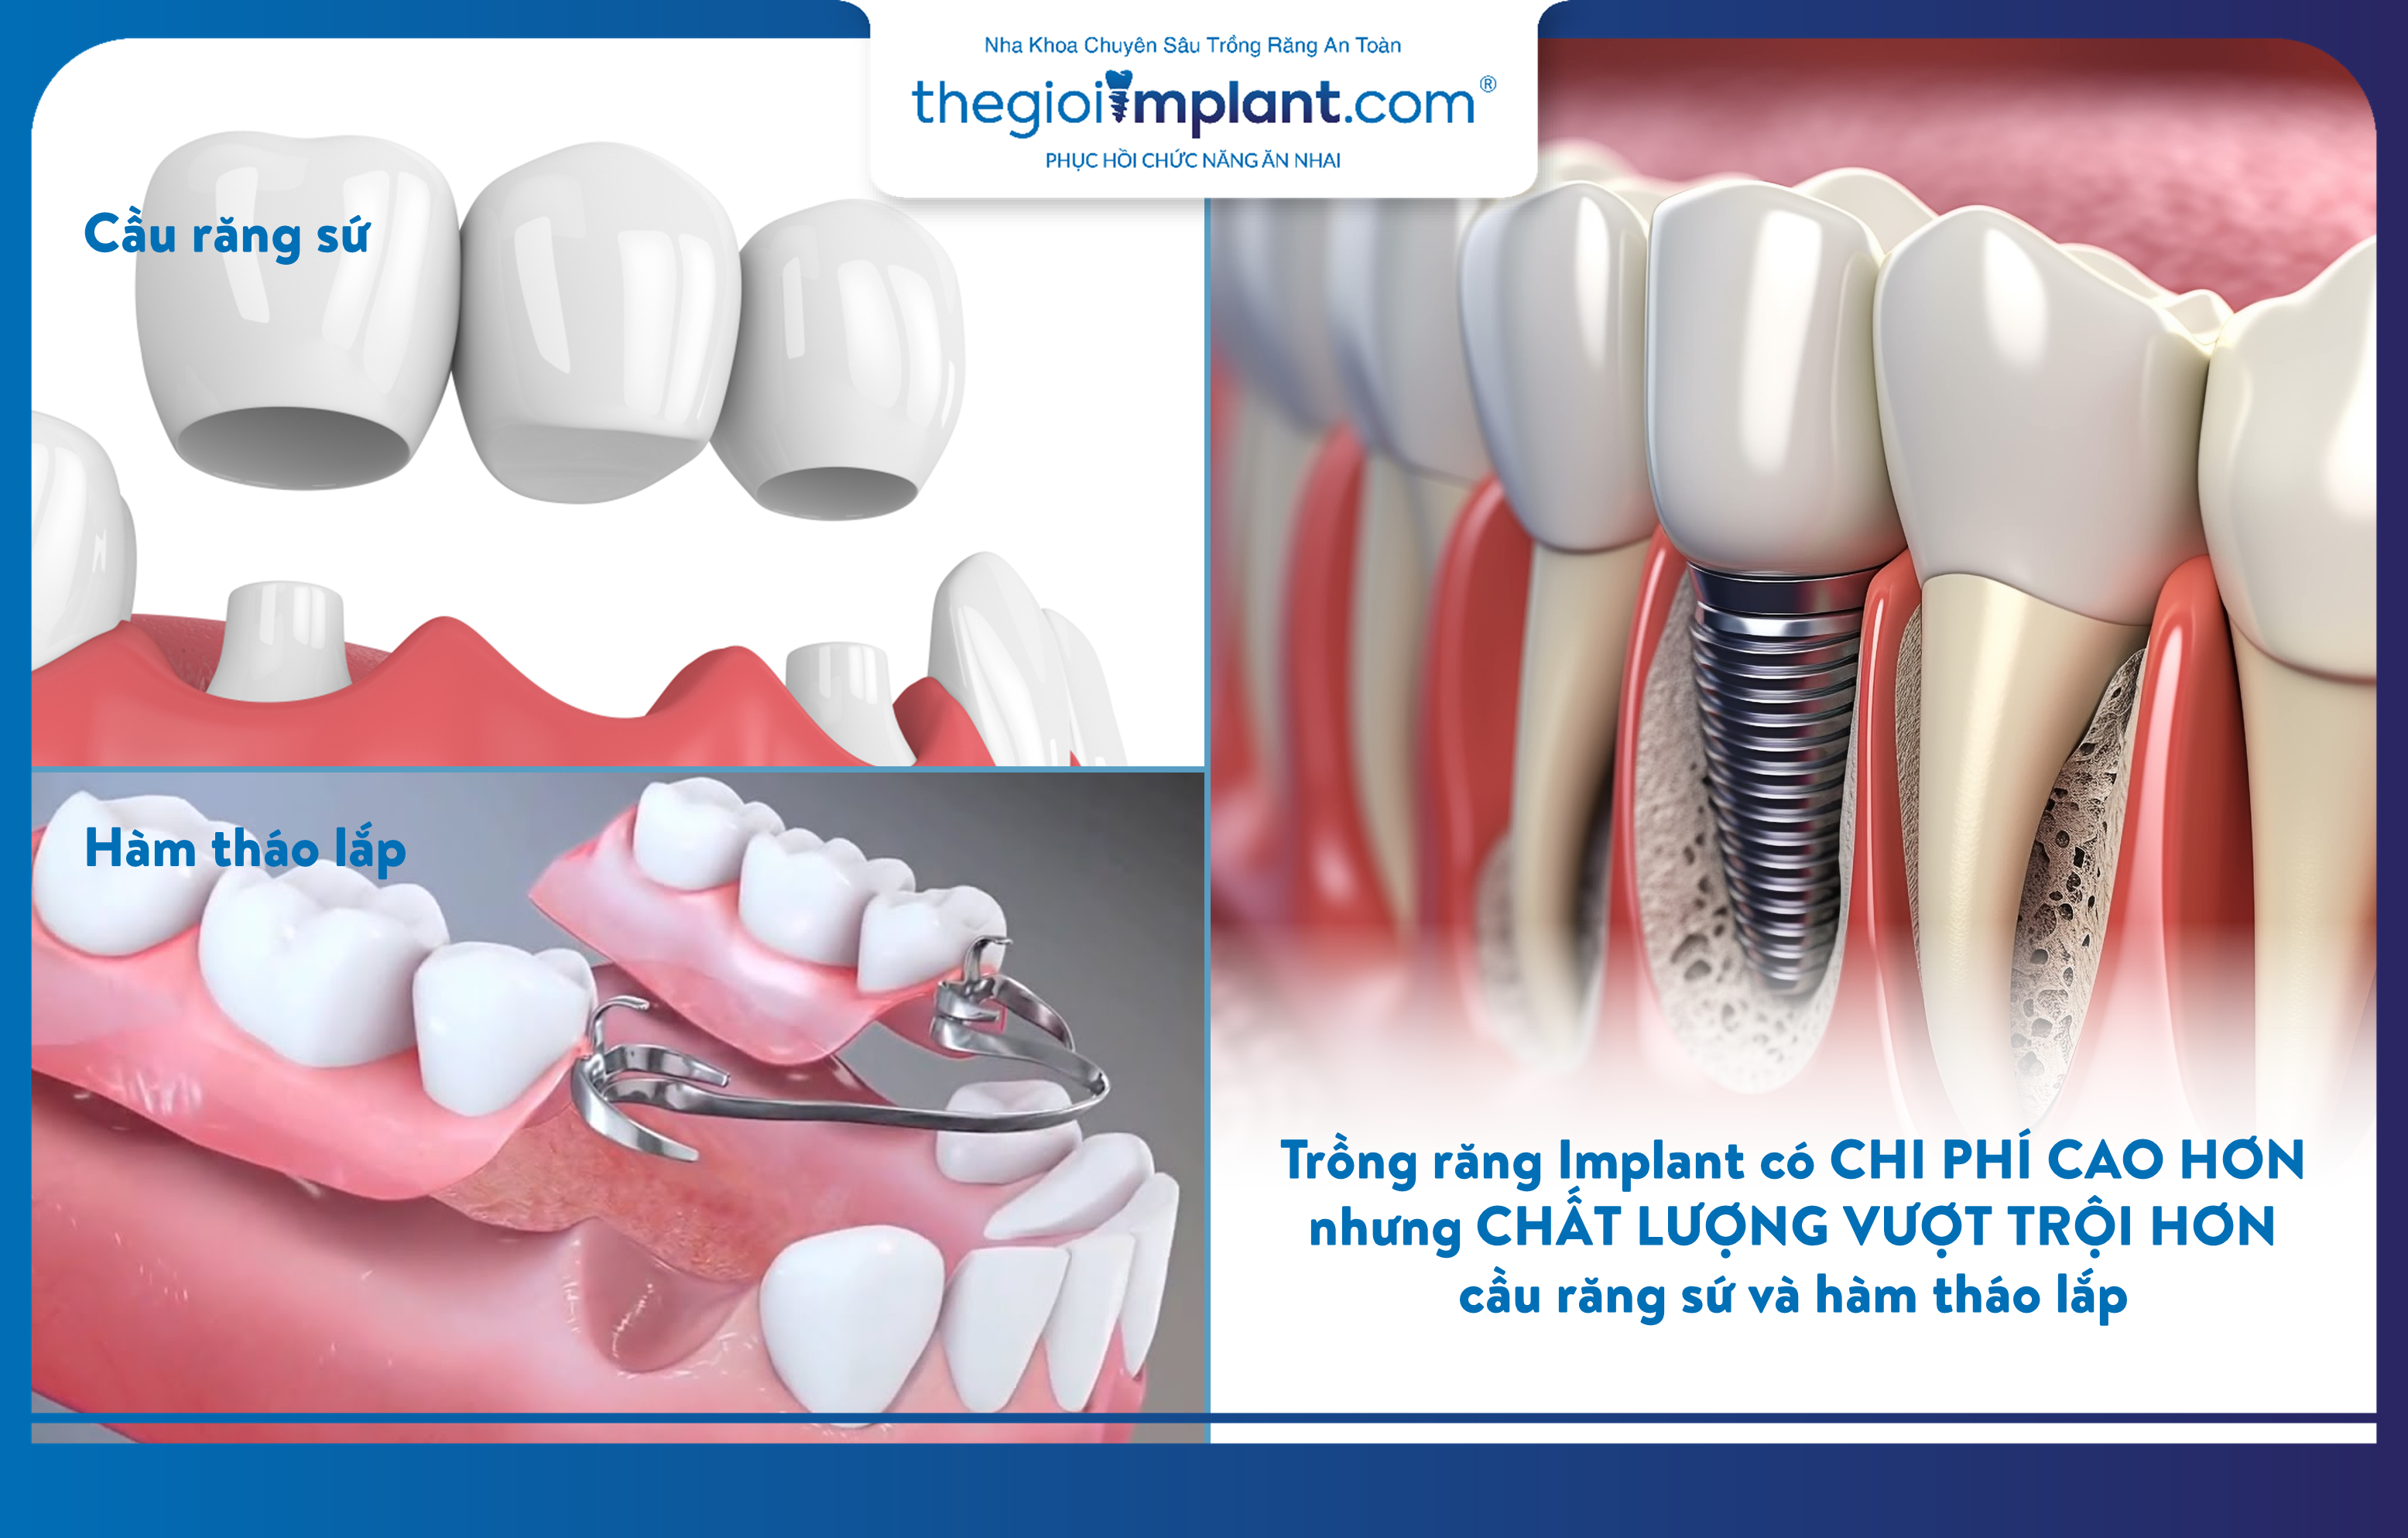 Trồng răng Implant có chi phí cao hơn nhưng chất lượng vượt trội hơn các phương pháp khác